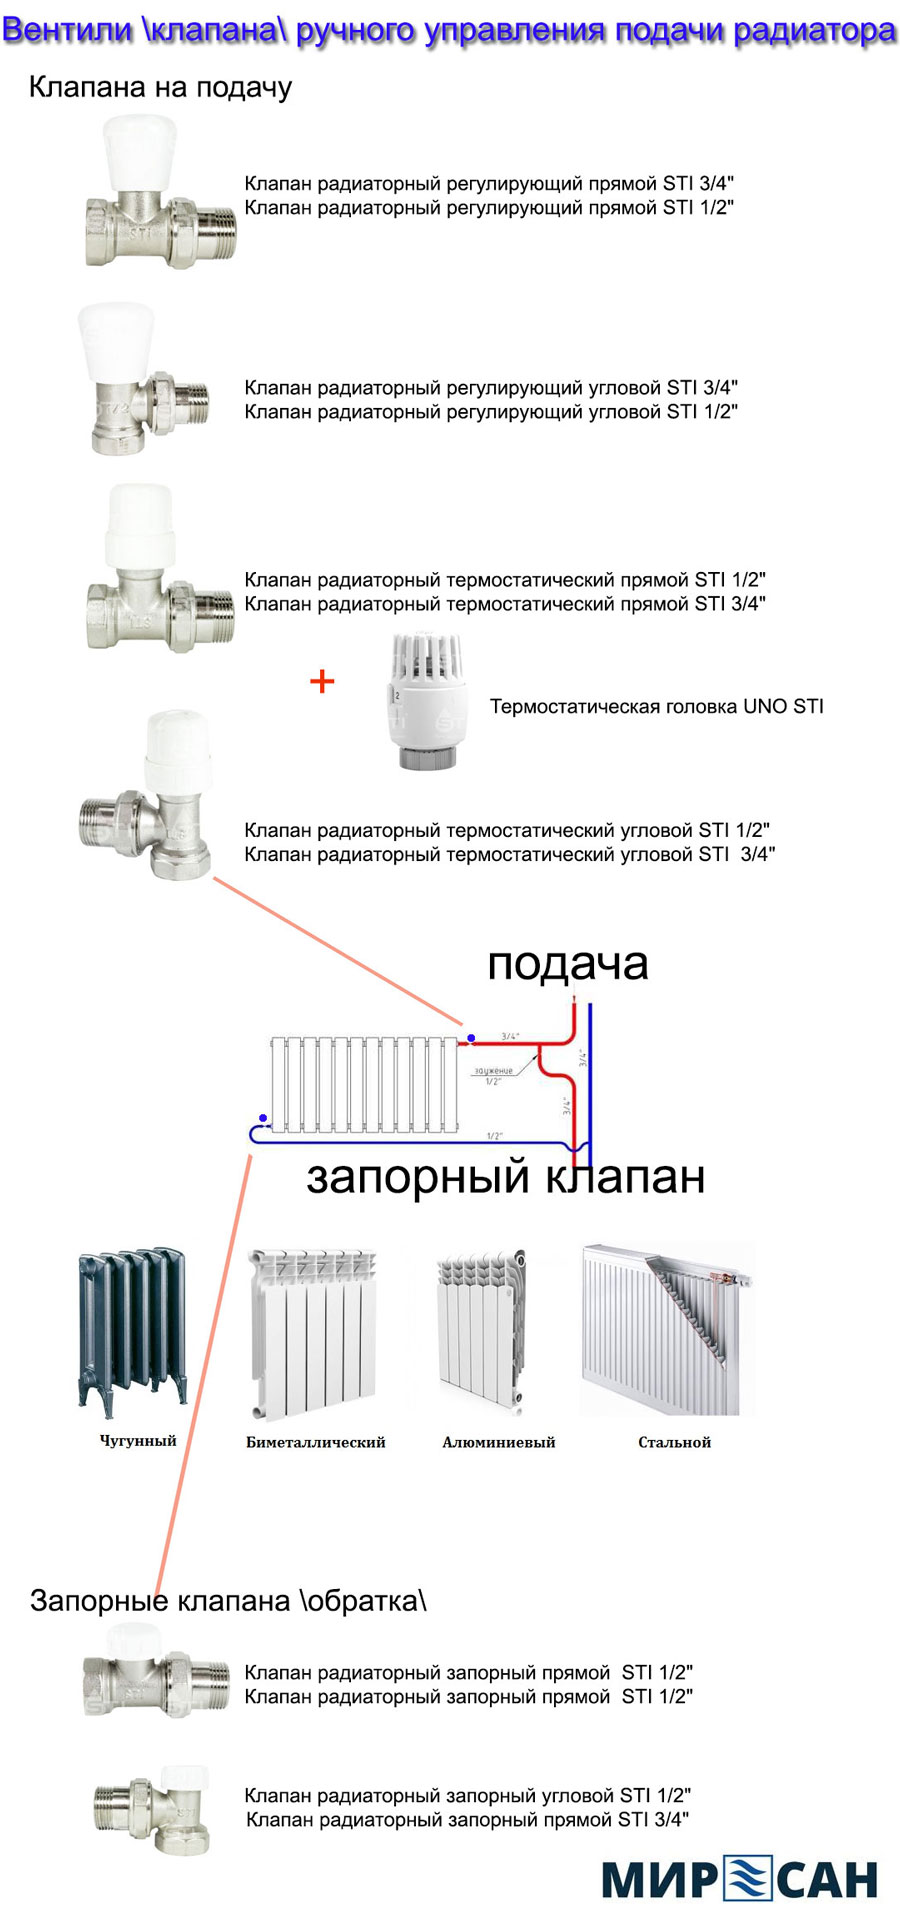 Клапана (вентили) радиаторные ручные, варианты и виды